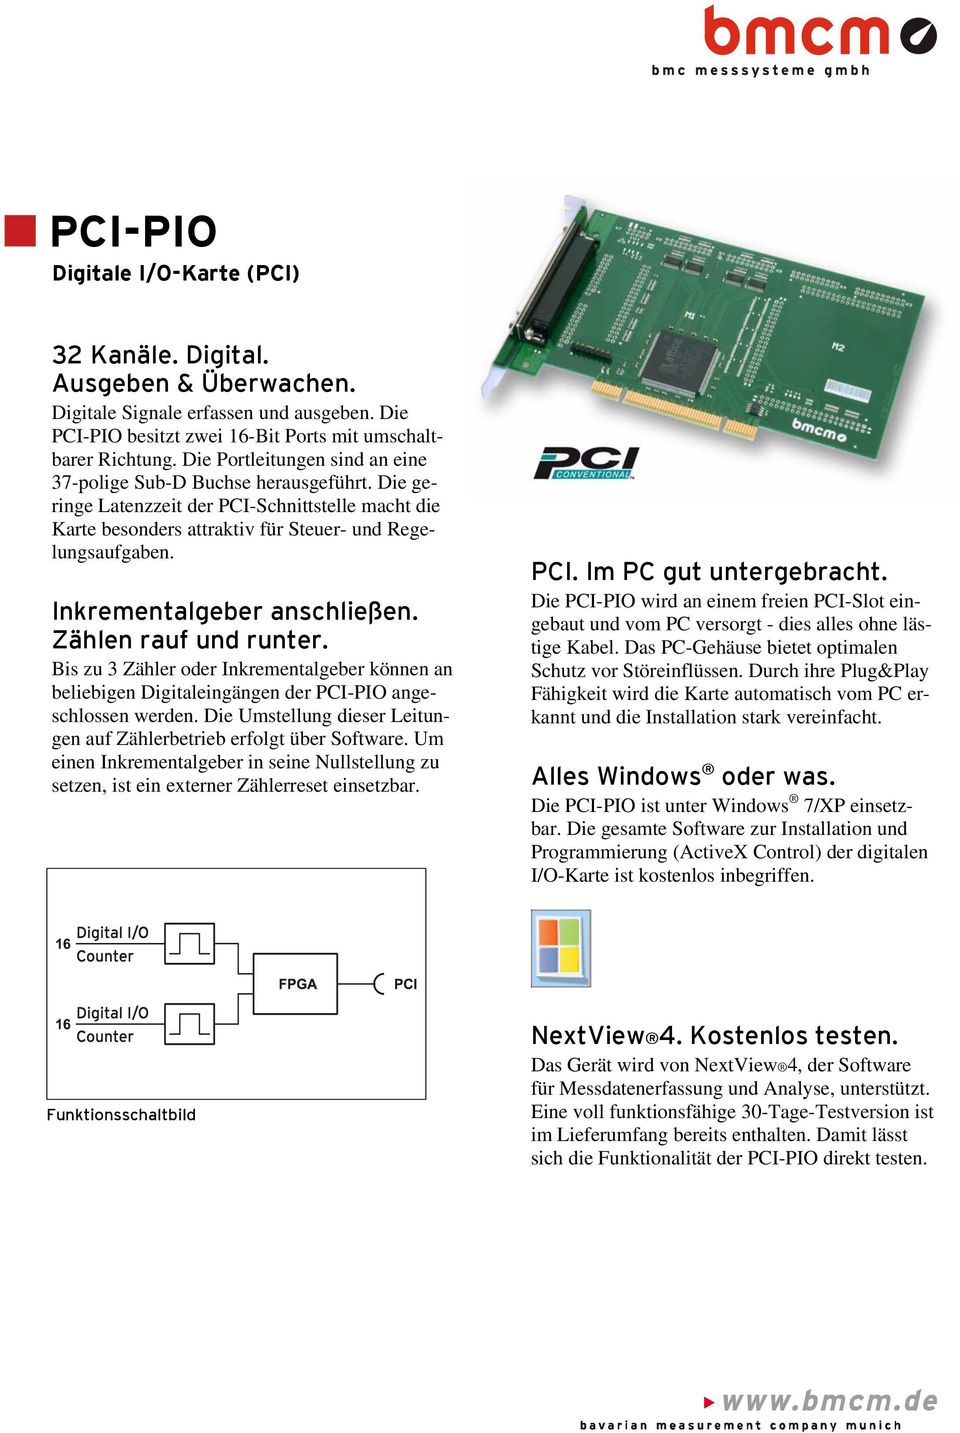 Inkrementalgeber anschließen. Zählen rauf und runter. Bis zu 3 Zähler oder Inkrementalgeber können an beliebigen Digitaleingängen der PCI-PIO angeschlossen werden.